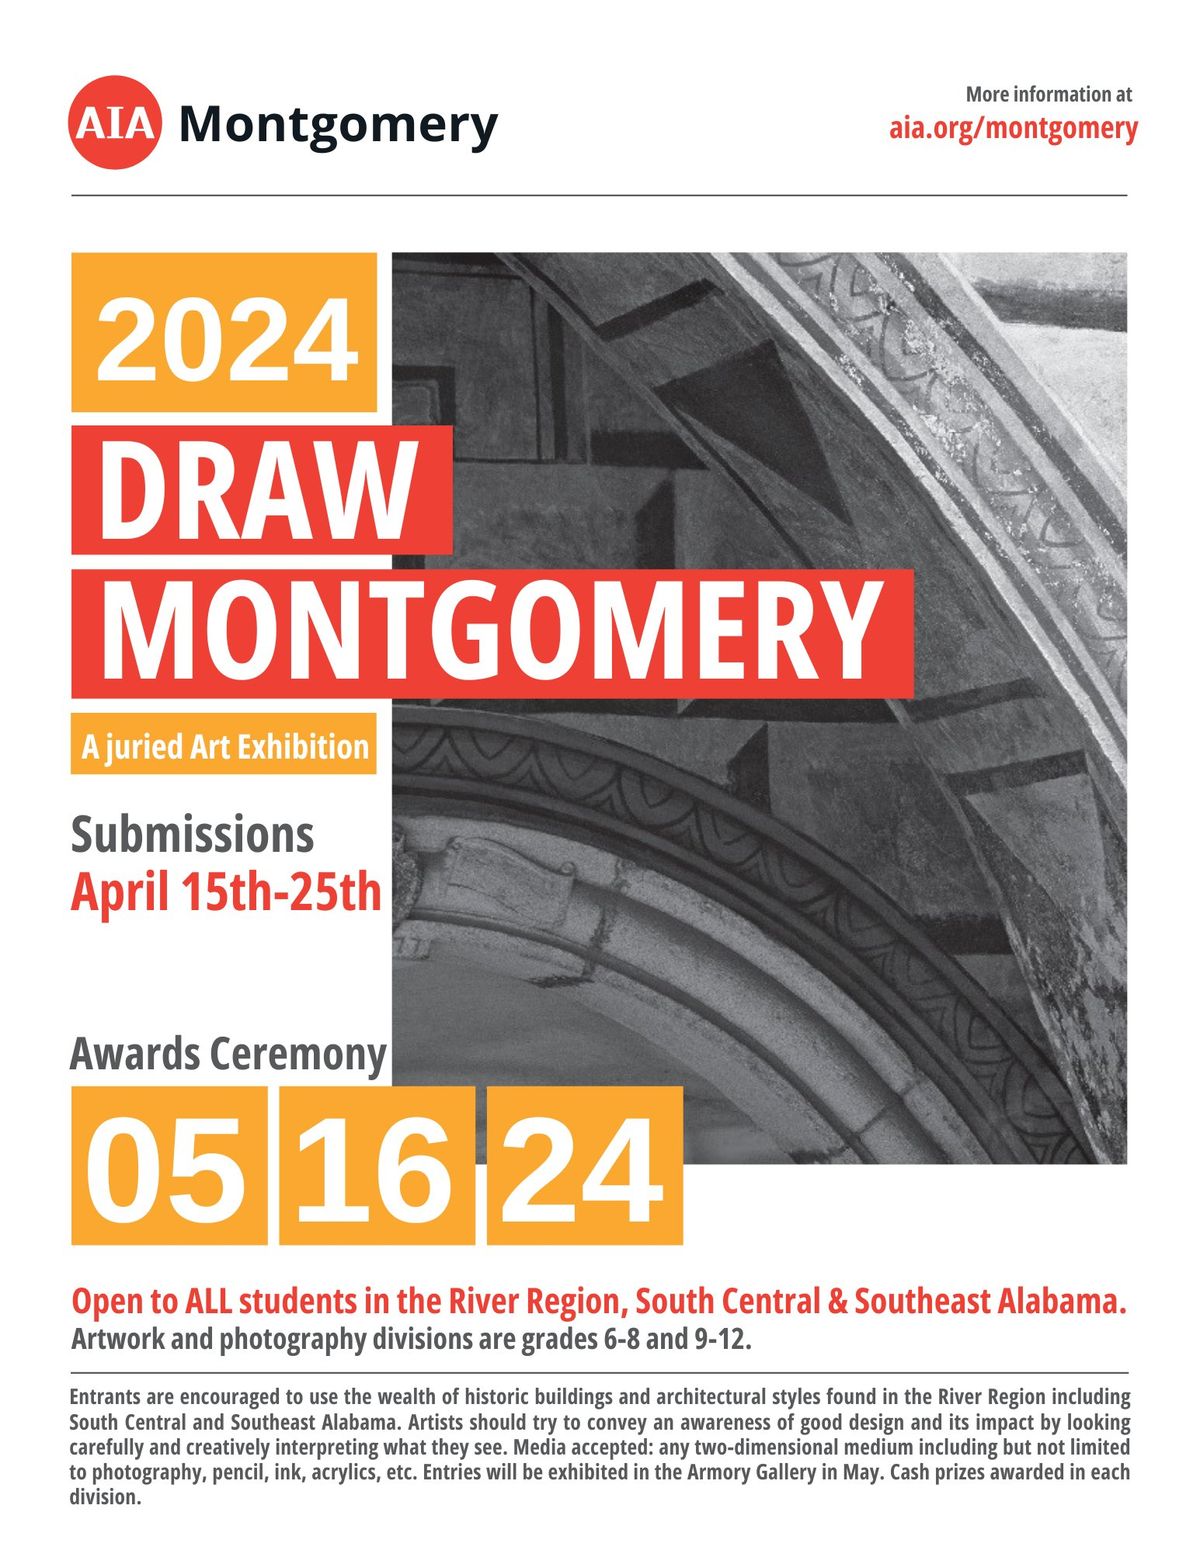 Draw Montgomery Awards Ceremony + Art Talk